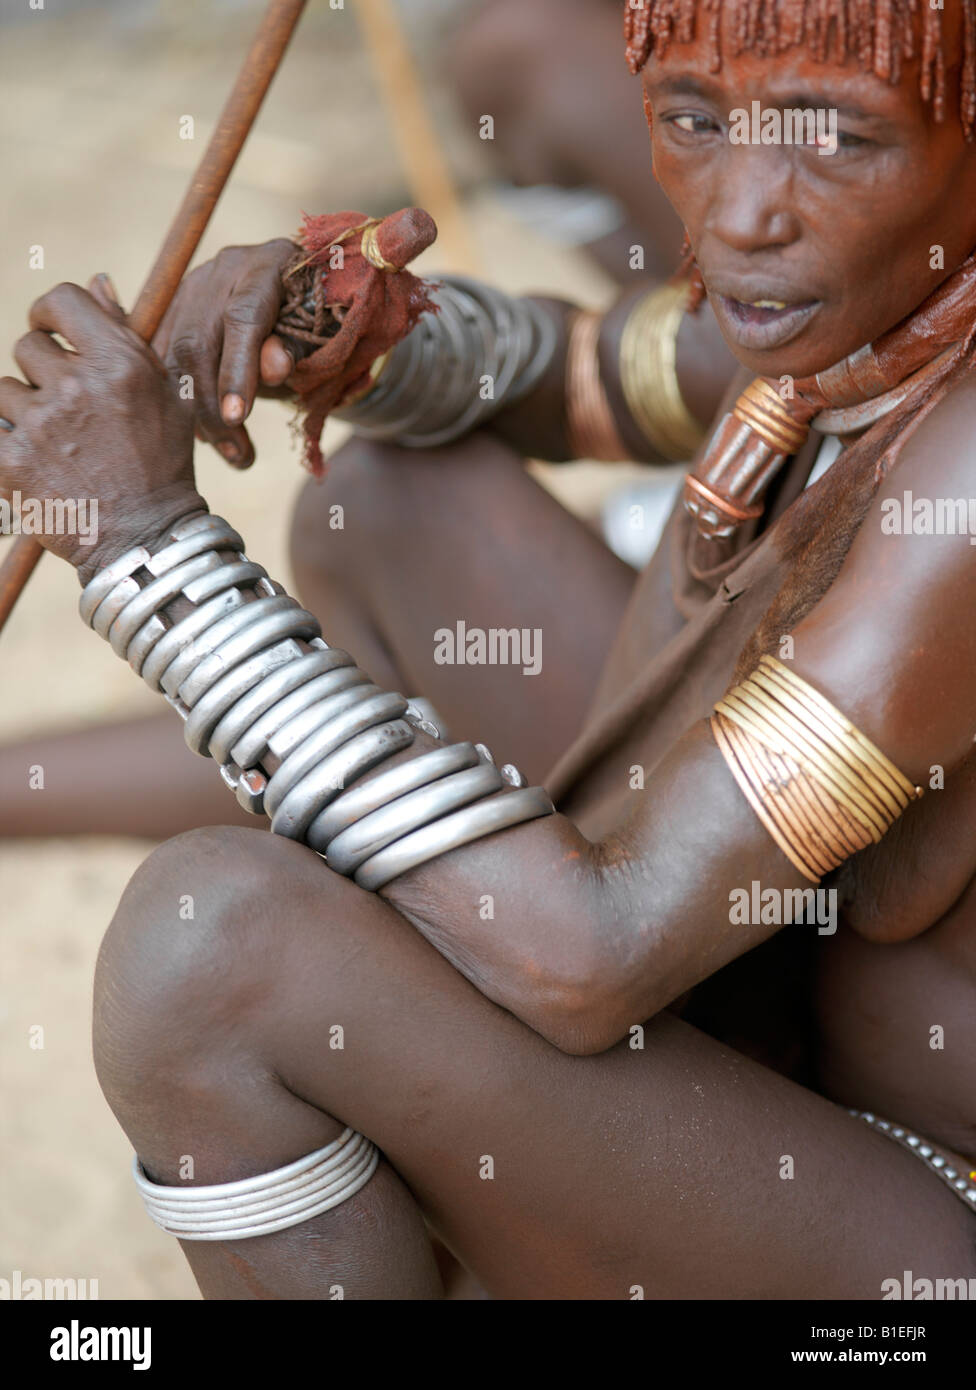 Hamar Frau Preisverleihung "Jumping des Stieres". Die Hamar sind semi-nomadische Hirten Südwesten Äthiopiens. Stockfoto